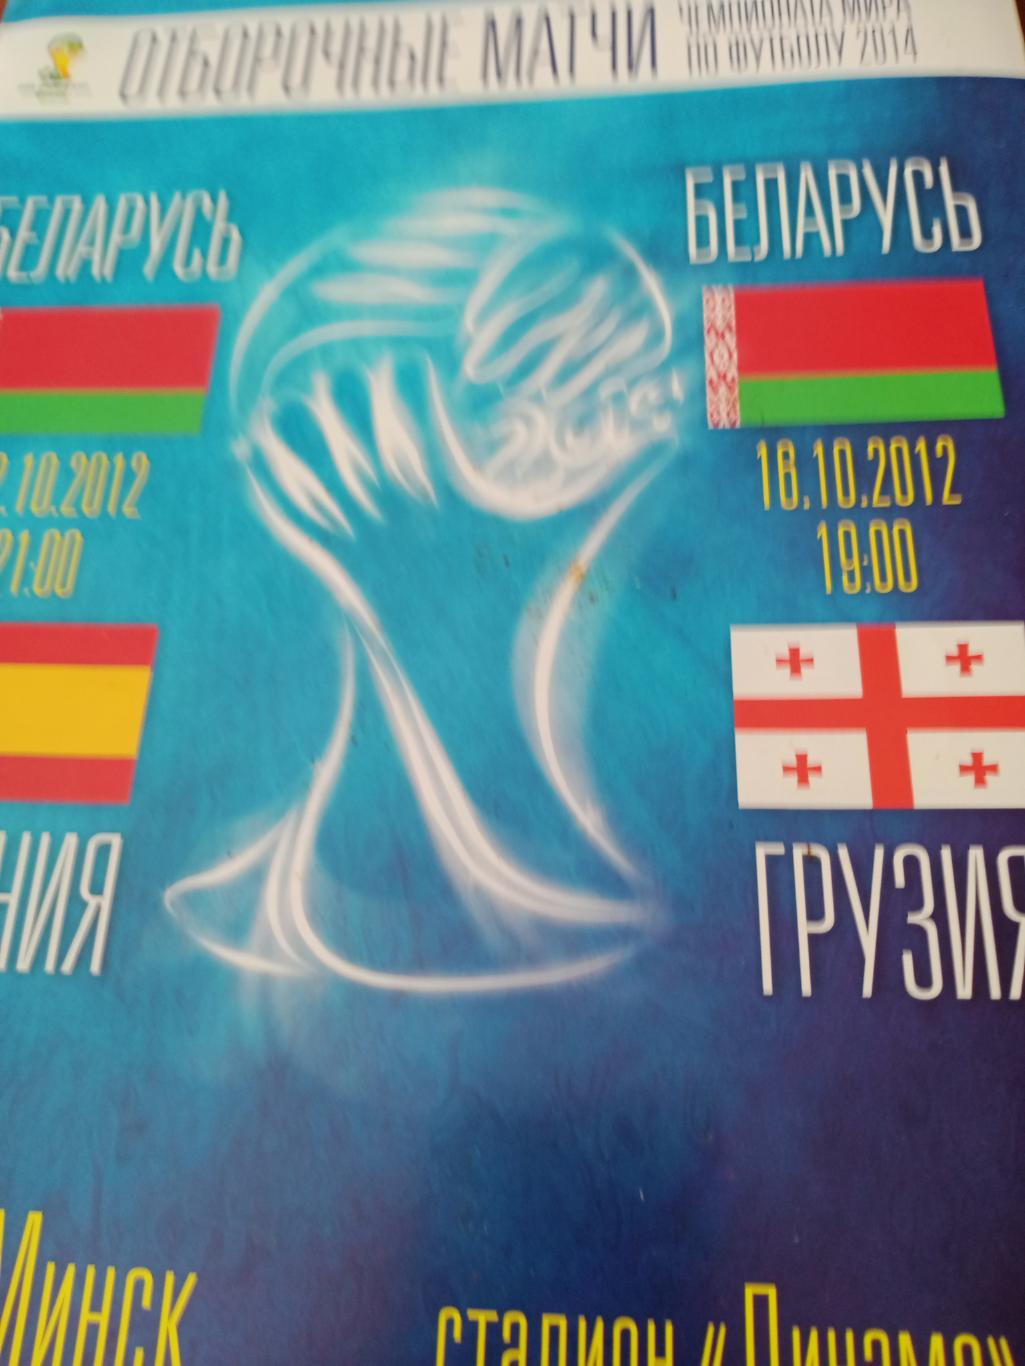 Официальная программа. Матчи Беларуси: Испания и Грузия (12 и 16.10. 2012)